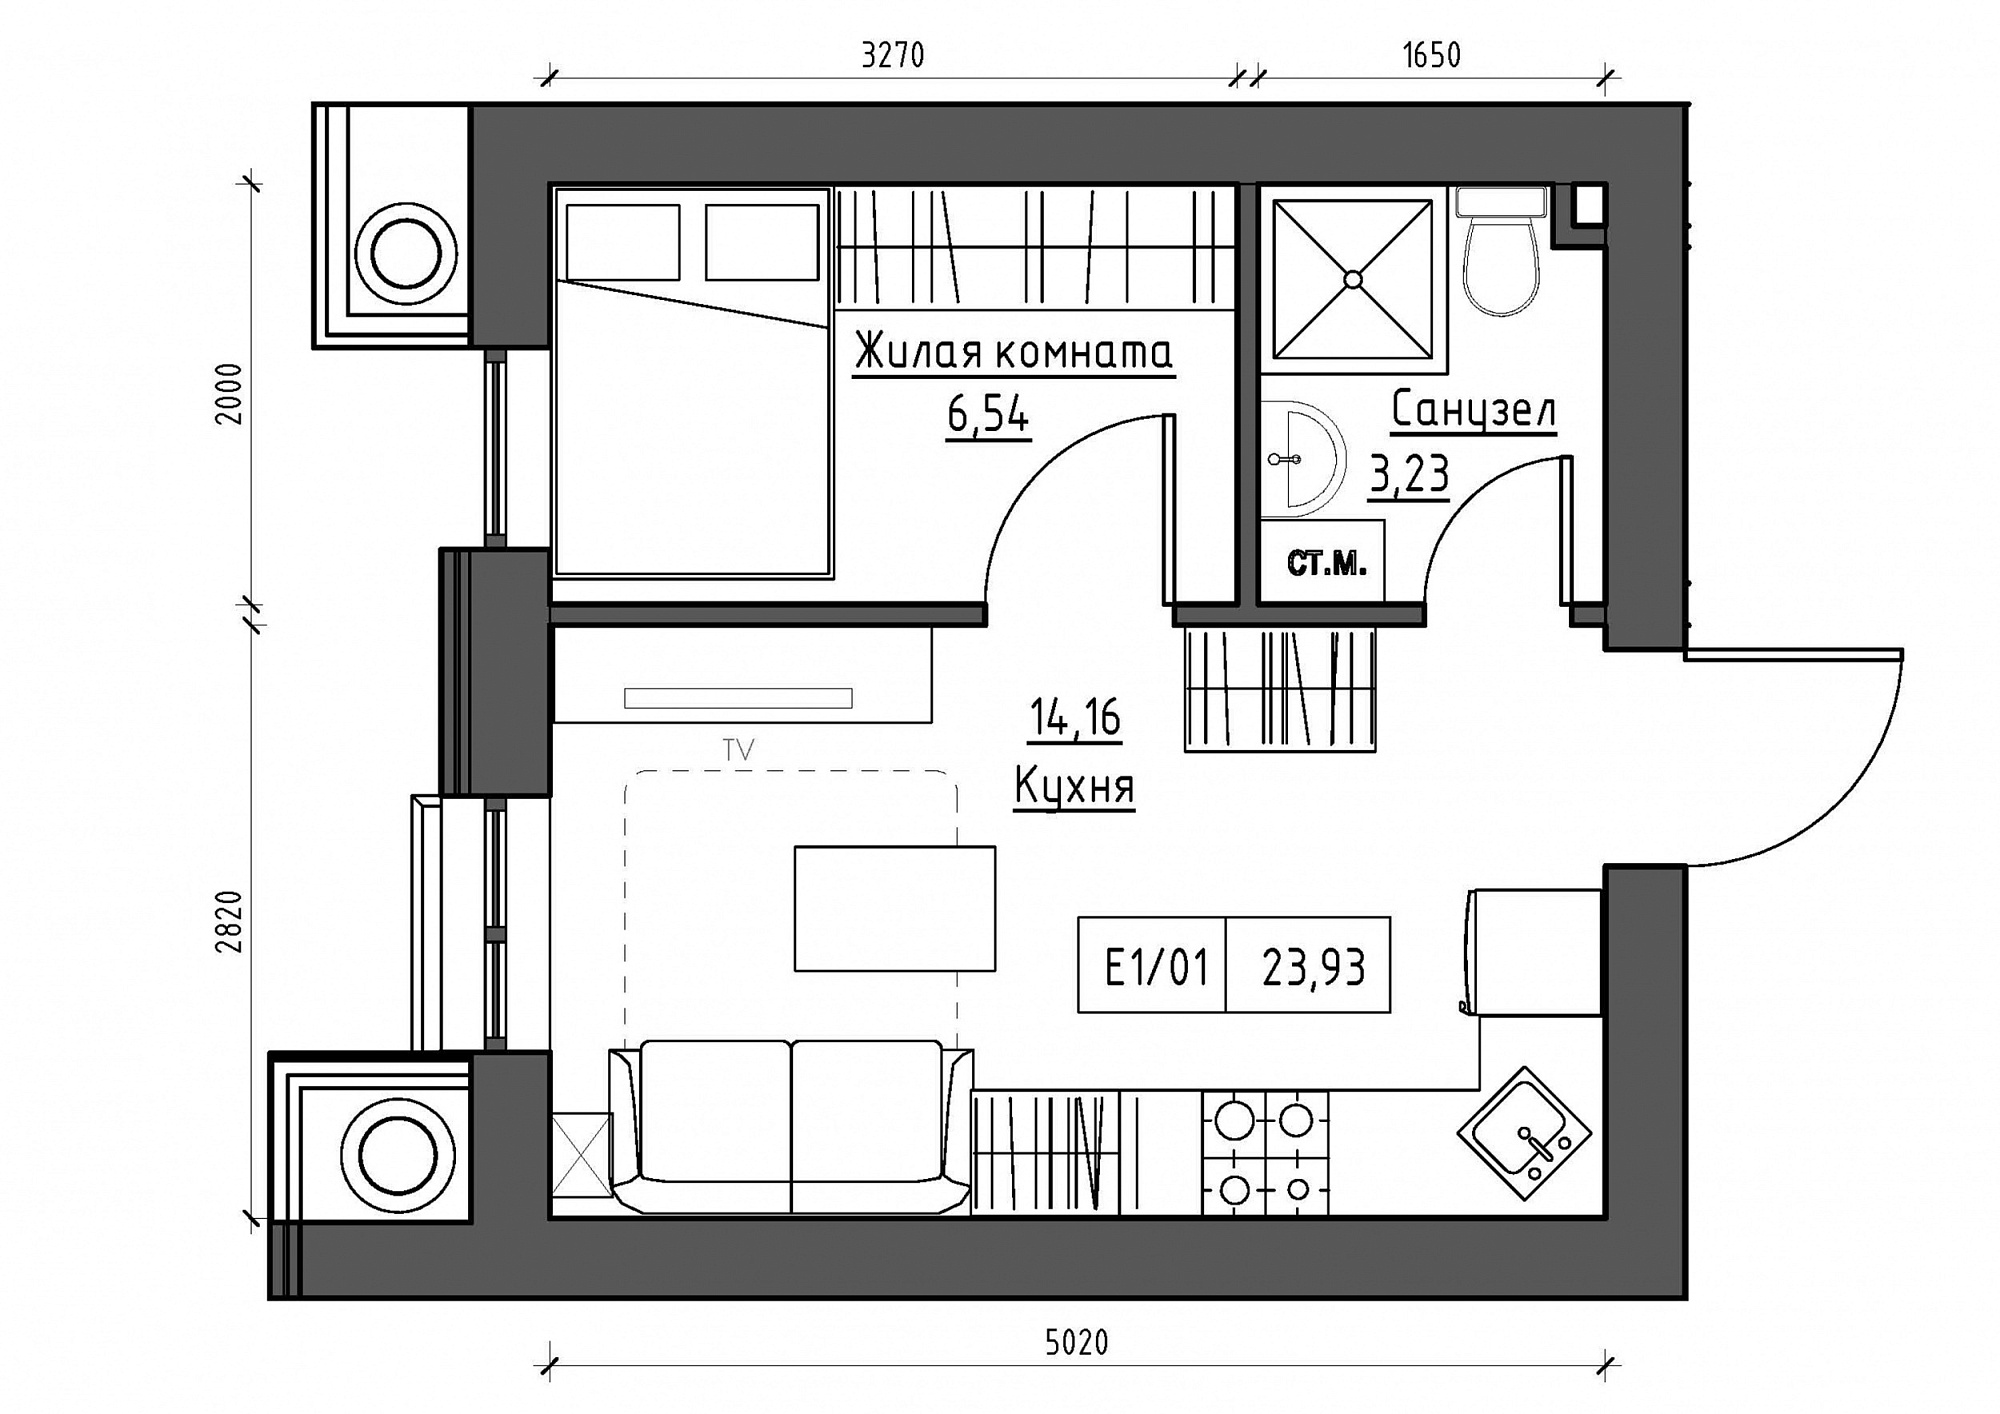 Планування 1-к квартира площею 23.93м2, KS-012-01/0012.